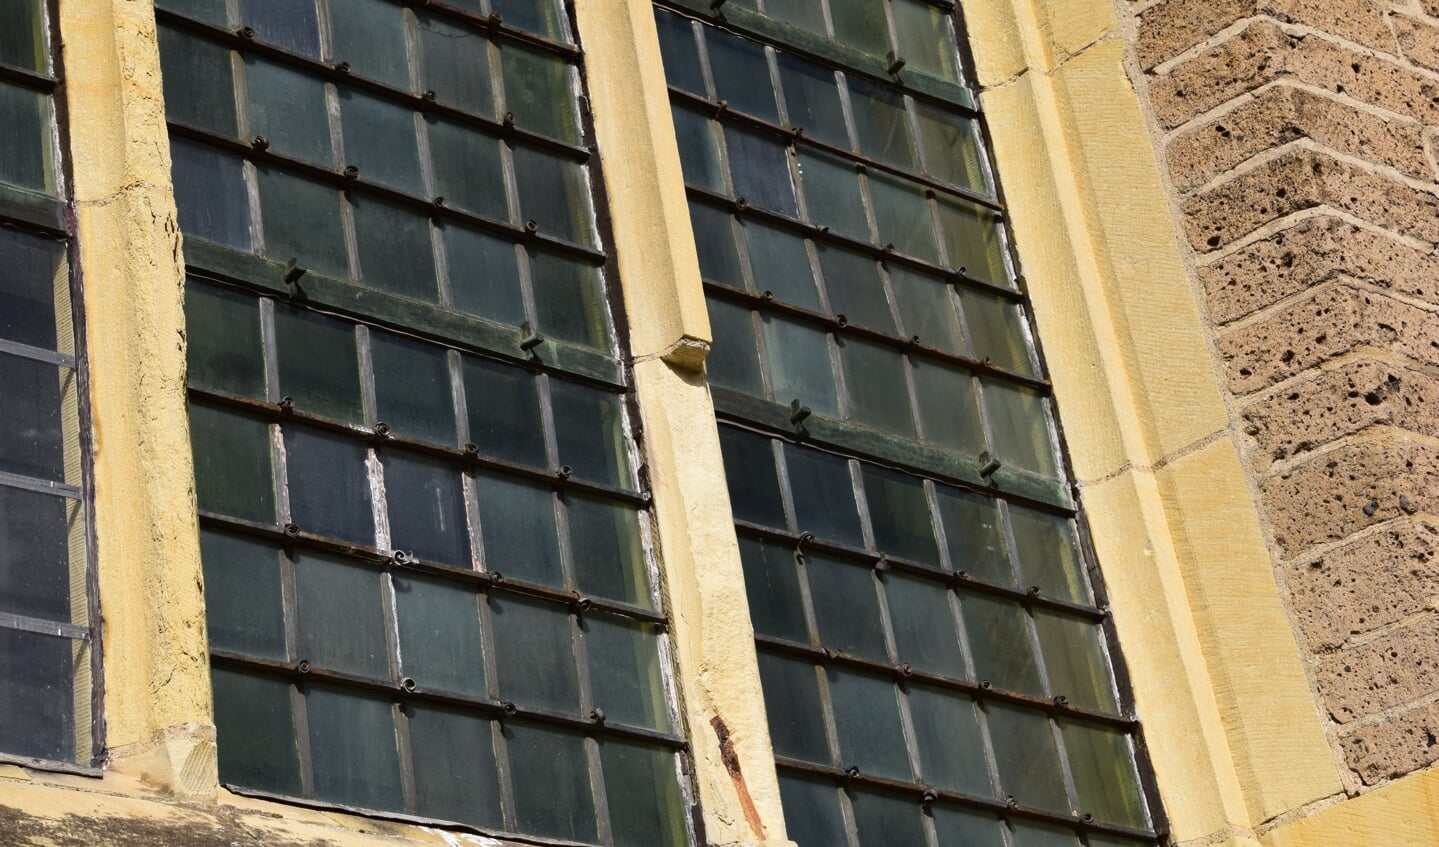 Het zandsteen van de ramen is door de jaren heen ernstig verweerd en aangetast. Foto: PR